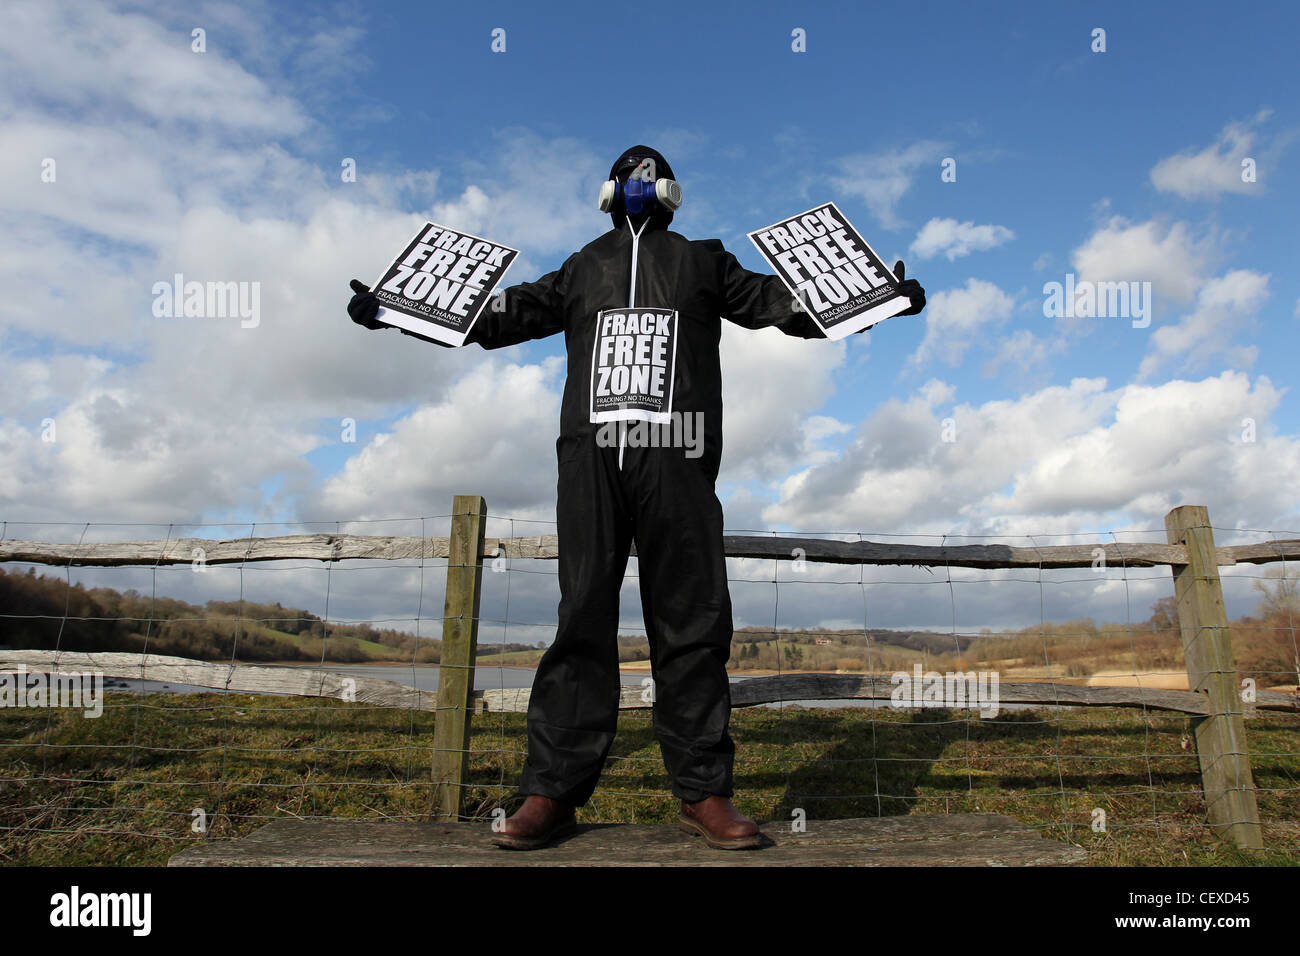 Un homme masqué en photo protestaient contre la possibilité de fracturation se déroulant près de Ardingly réservoir, West Sussex, UK. Banque D'Images